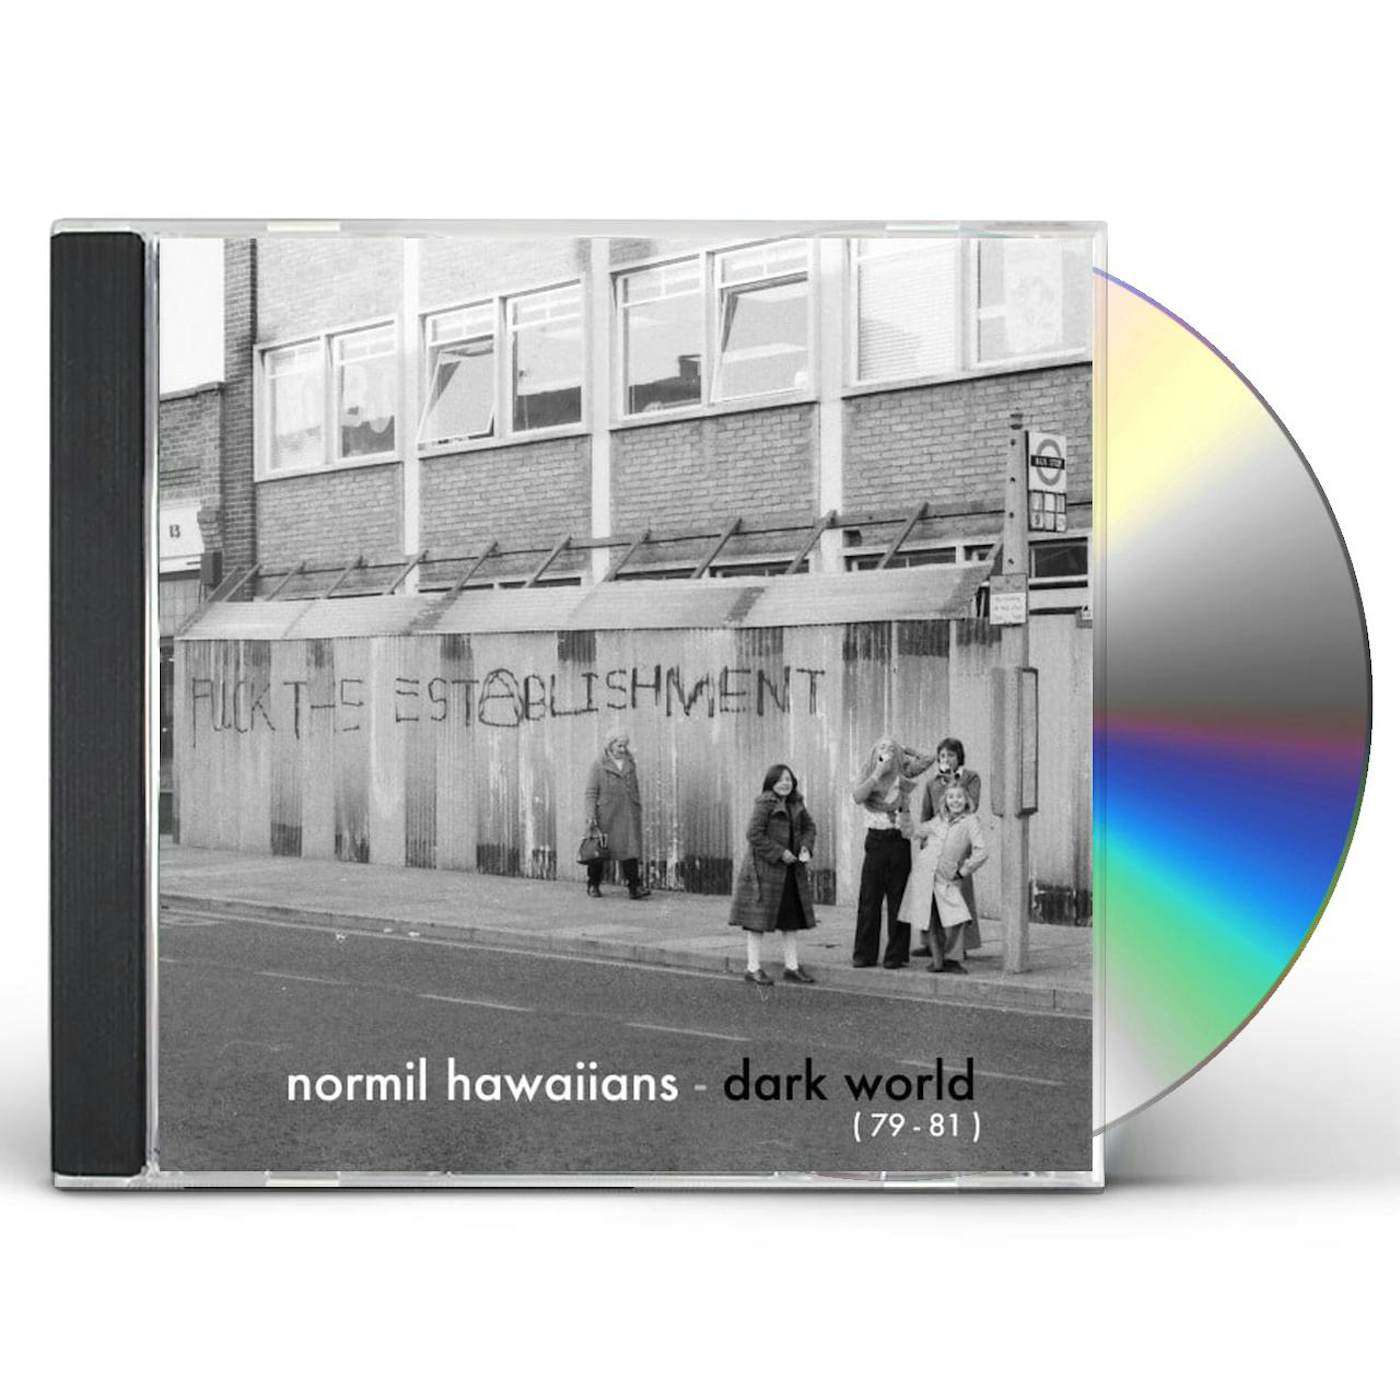 Normil Hawaiians DARK WORLD (79-81) CD